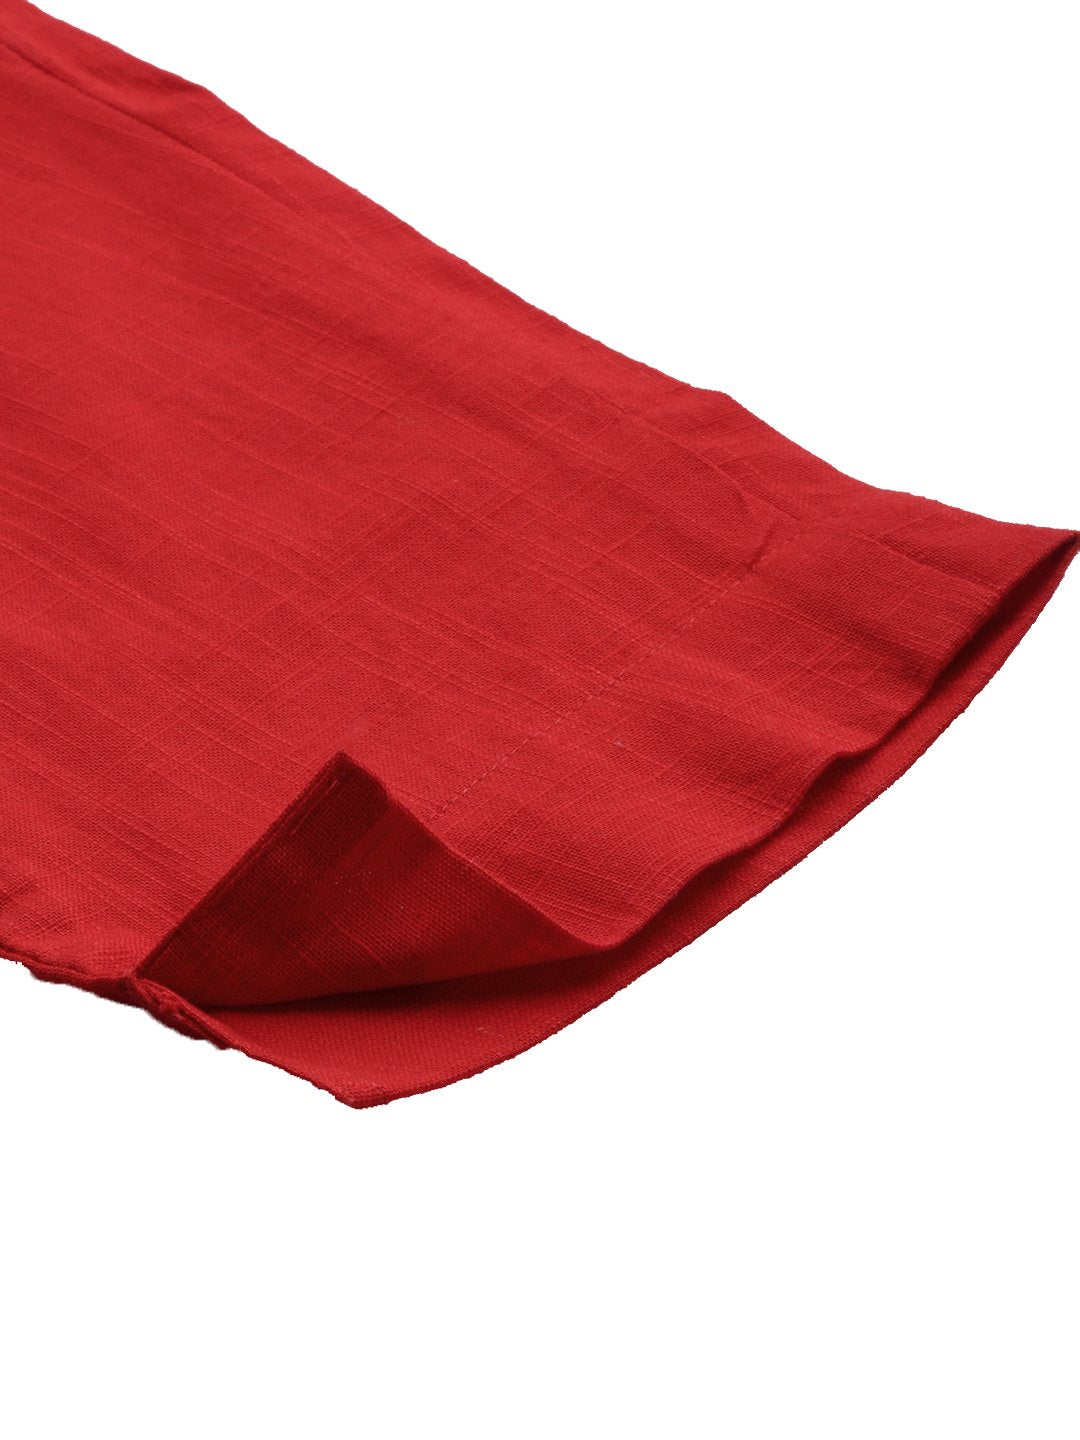 Women's Red Cotton Trouser - Divena